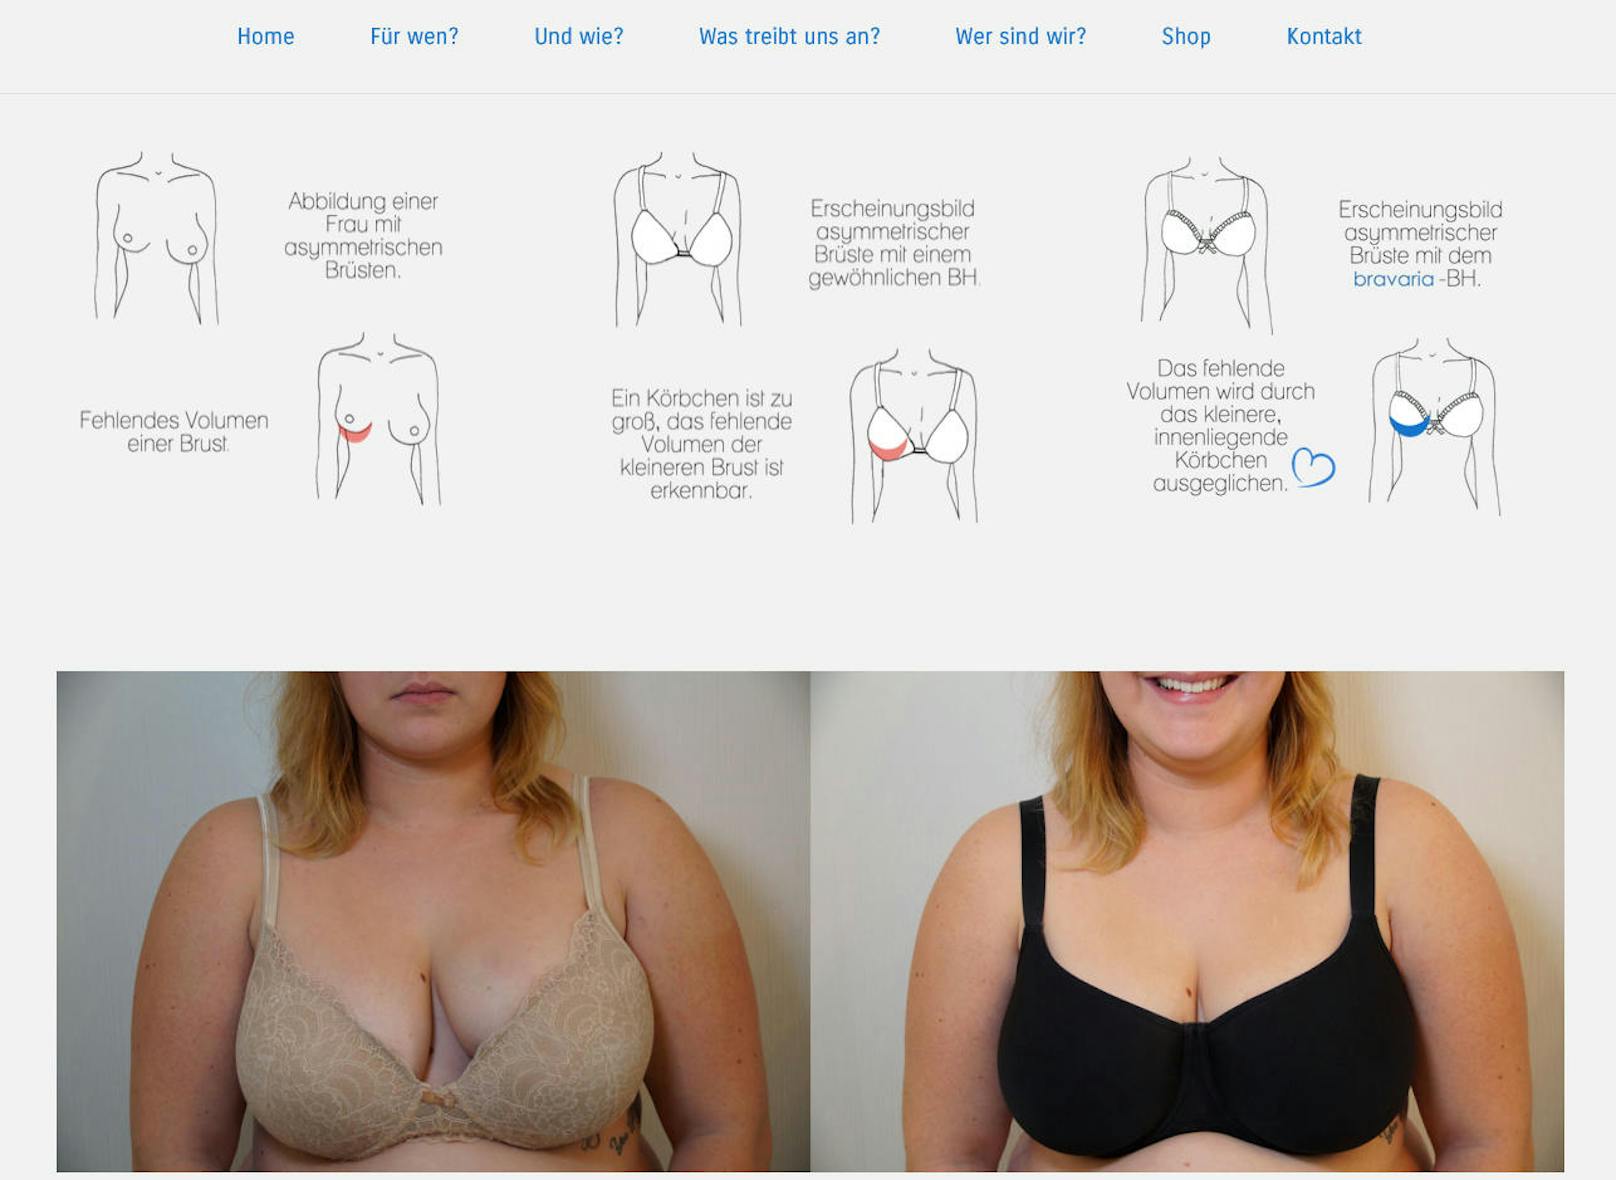 Viele Frauen haben ungleich große Brüste - das ist normal und okay. Passende BH?s zu finden ist jedoch unmöglich. Bravaria will das jetzt ändern, mit dem ersten BH für asymmetrische Brüste.